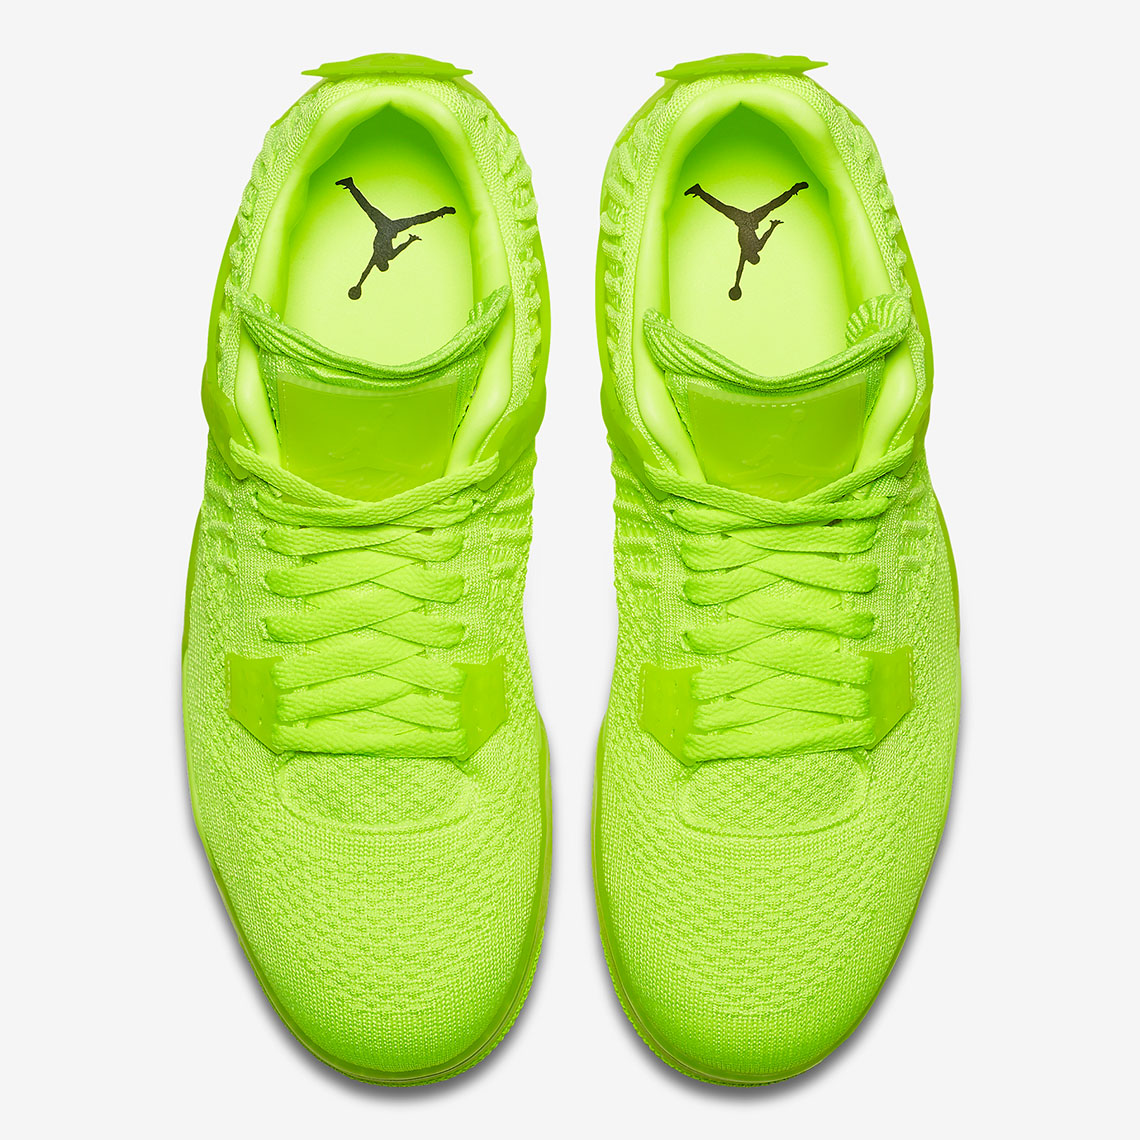 Air Nike Jordan 13 RETRO BP 414575-042 Volt Aq3559 700 Release Date 3